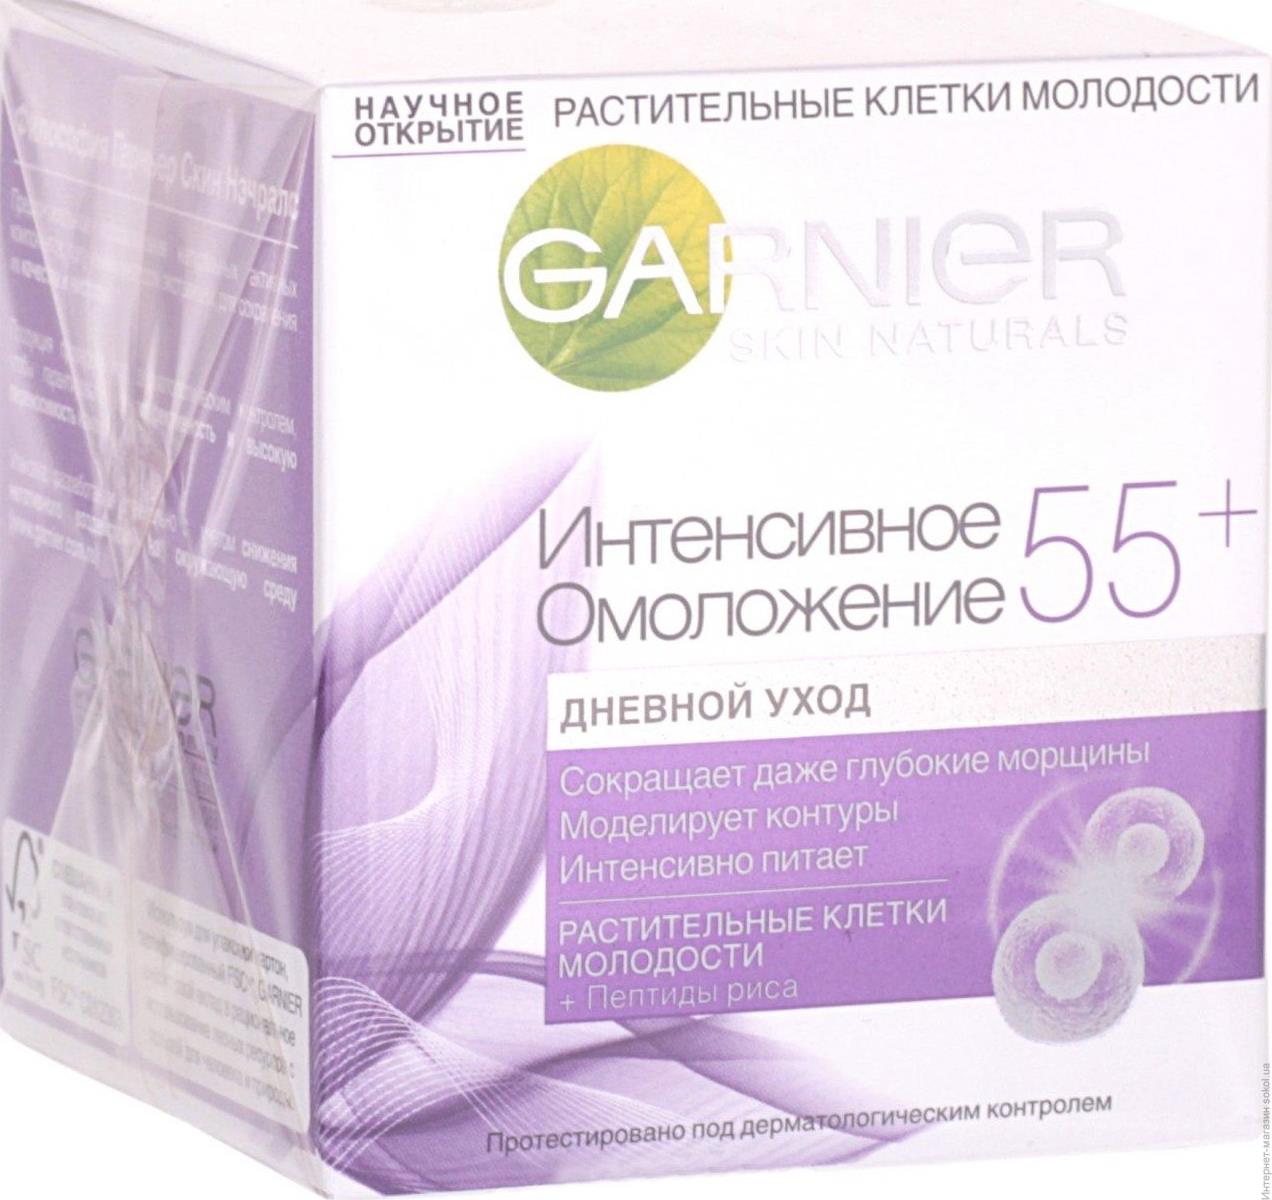 Крем Garnier Skin Naturals Растительные клетки молодости 55+ дневной